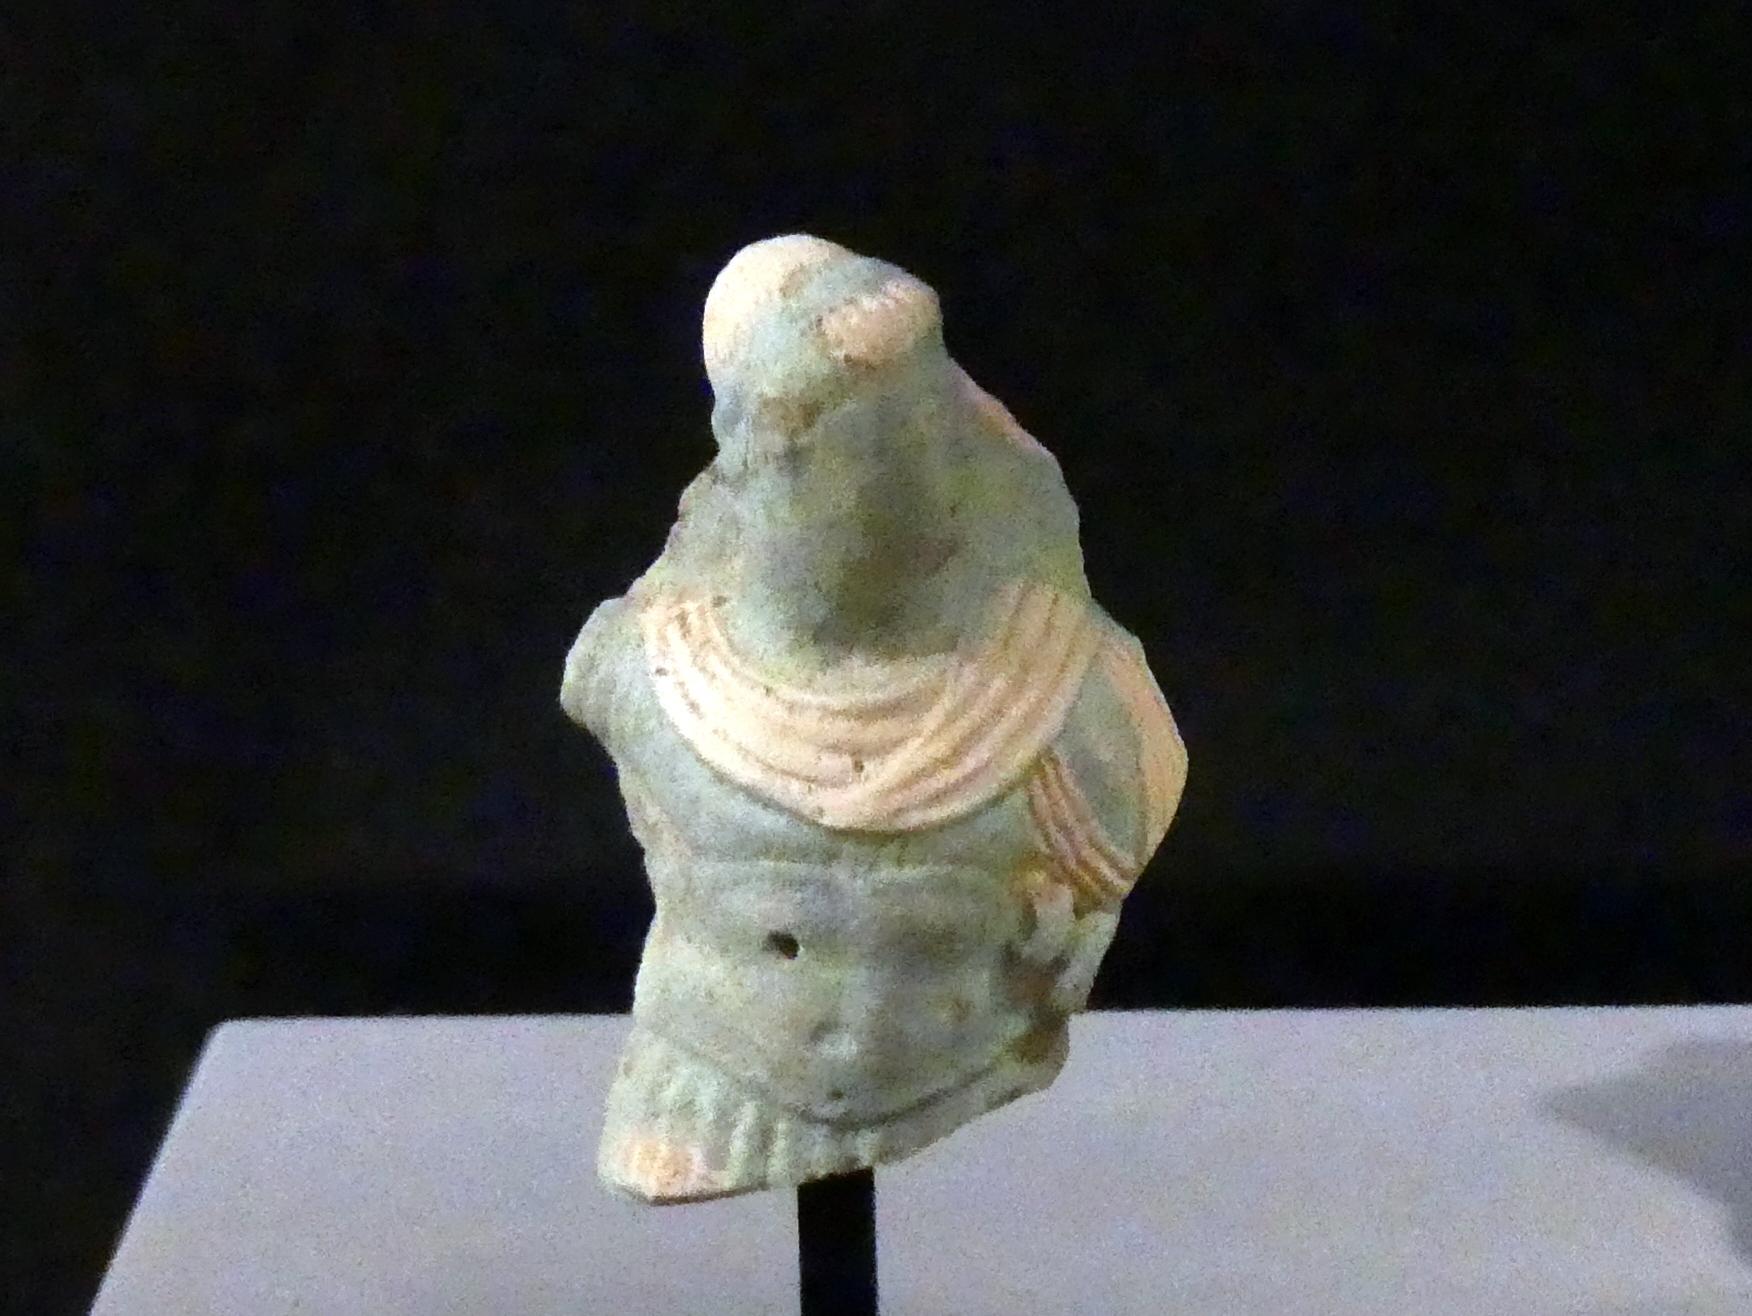 Fragment eines reliefierten Gefäßes mit Darstellung eines ptolemäischen Herrschers, Ptolemäische Zeit, 400 v. Chr. - 1 n. Chr., 300 - 100 v. Chr., Bild 1/2